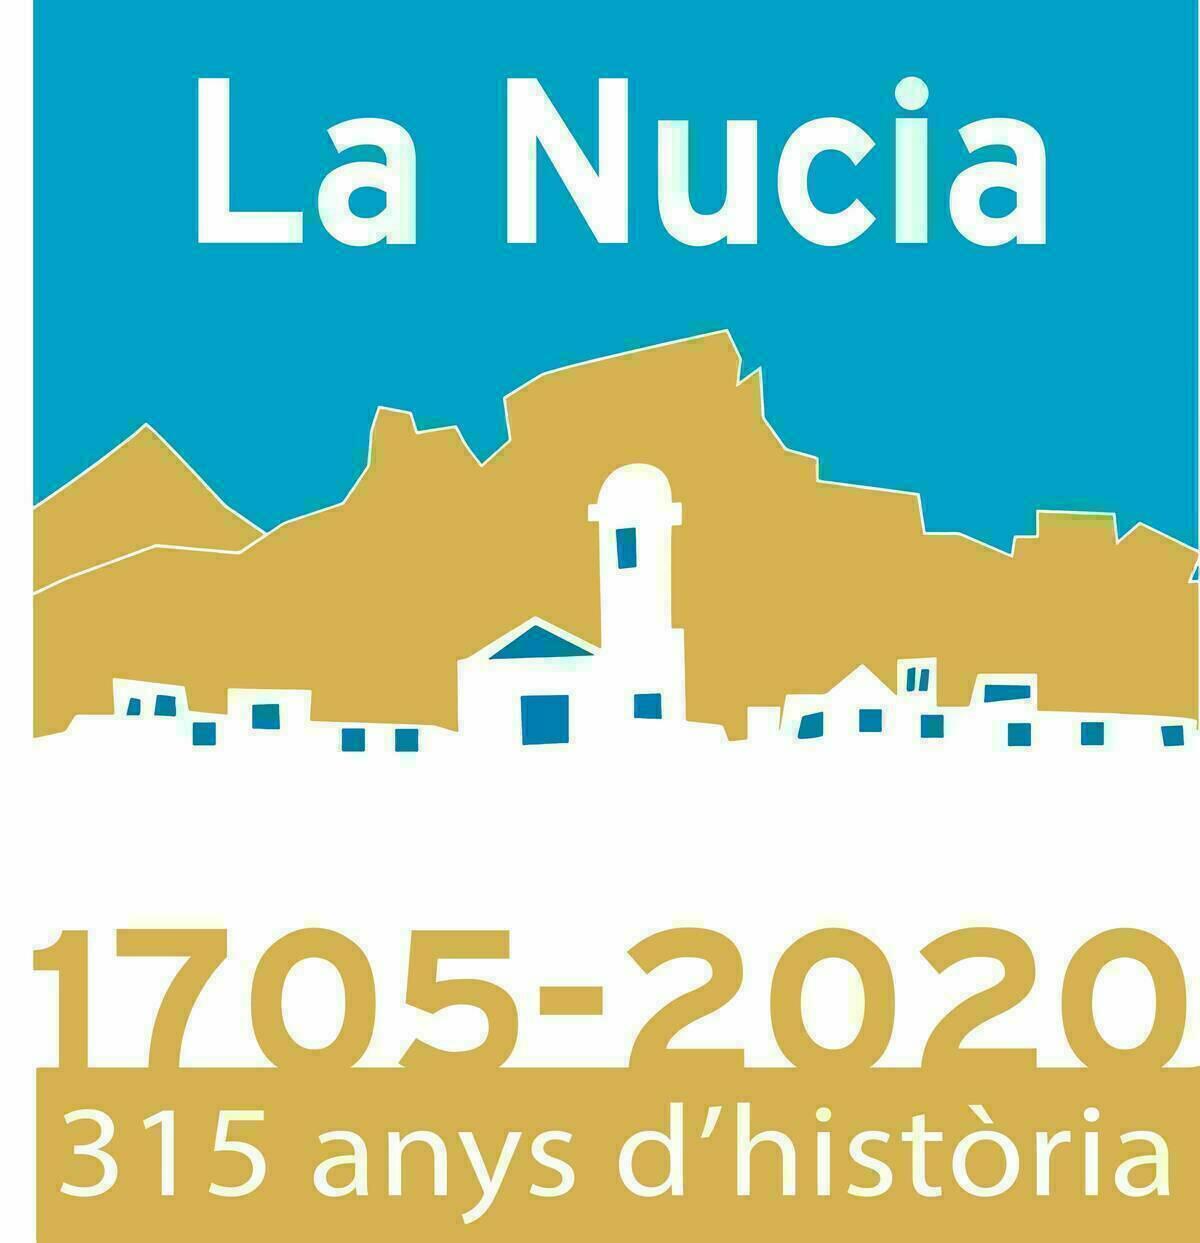 La Nucía cumple hoy 315 años de historia (1705-2020).